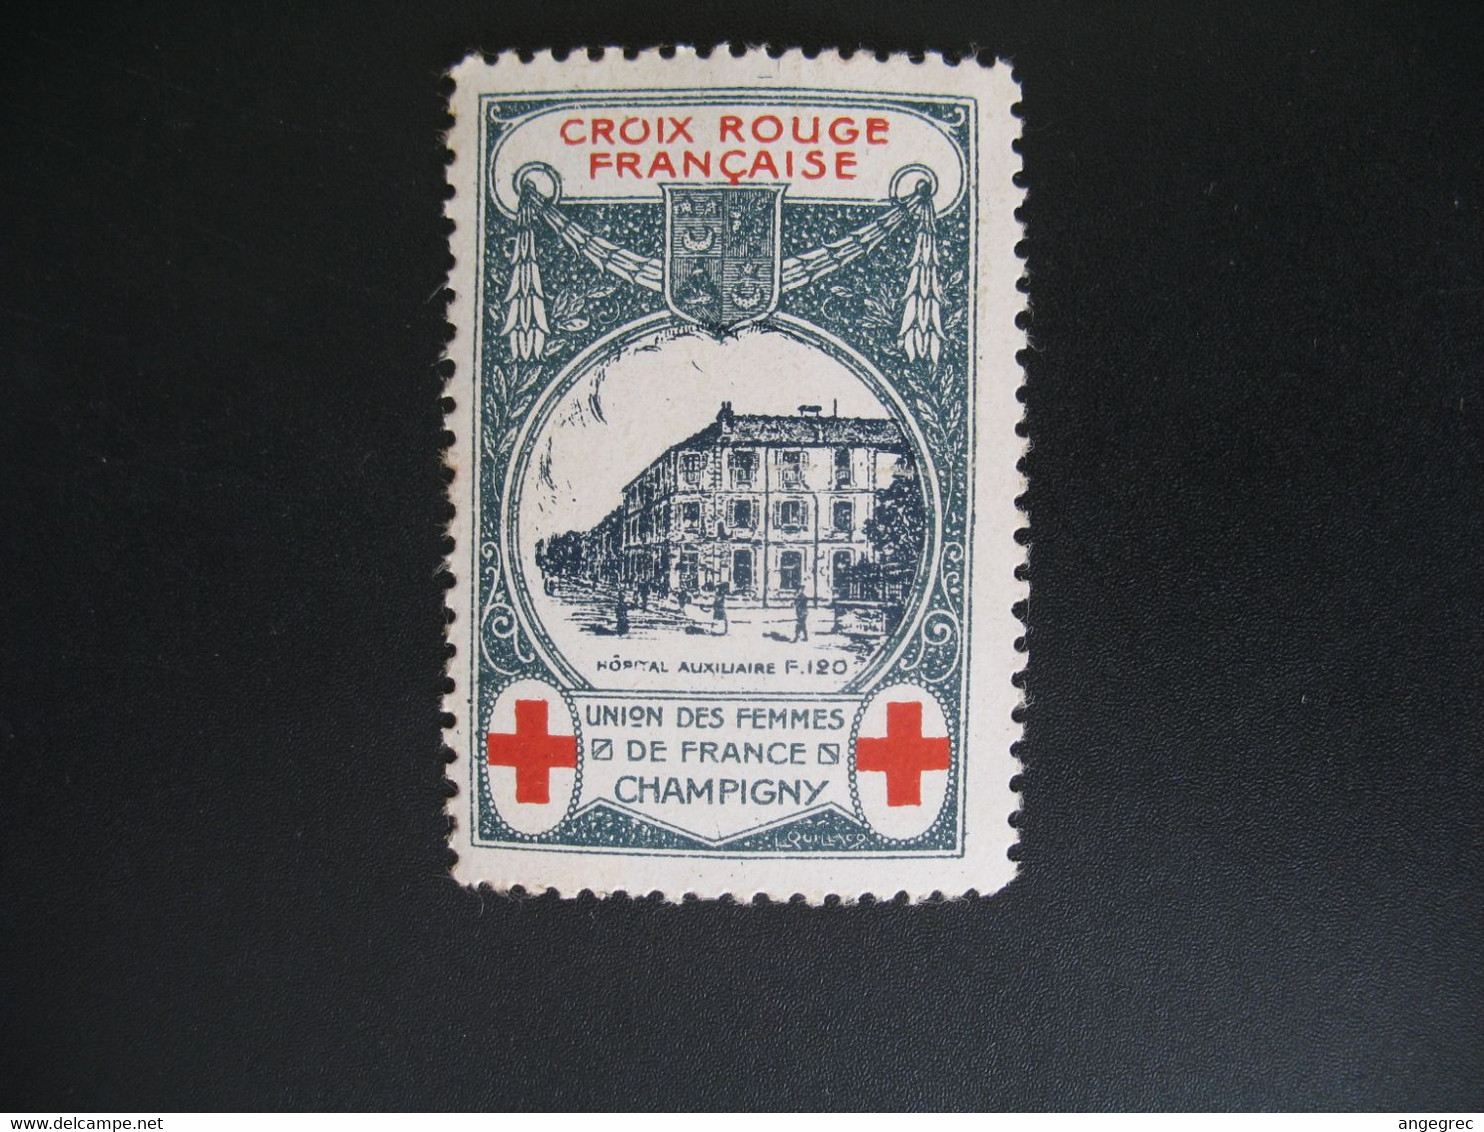 Vignette Militaire Delandre Guerre De 1914 - Croix Rouge - Red Cross -   Neuf ** Champigny Union Des Femmes  De France - Rode Kruis